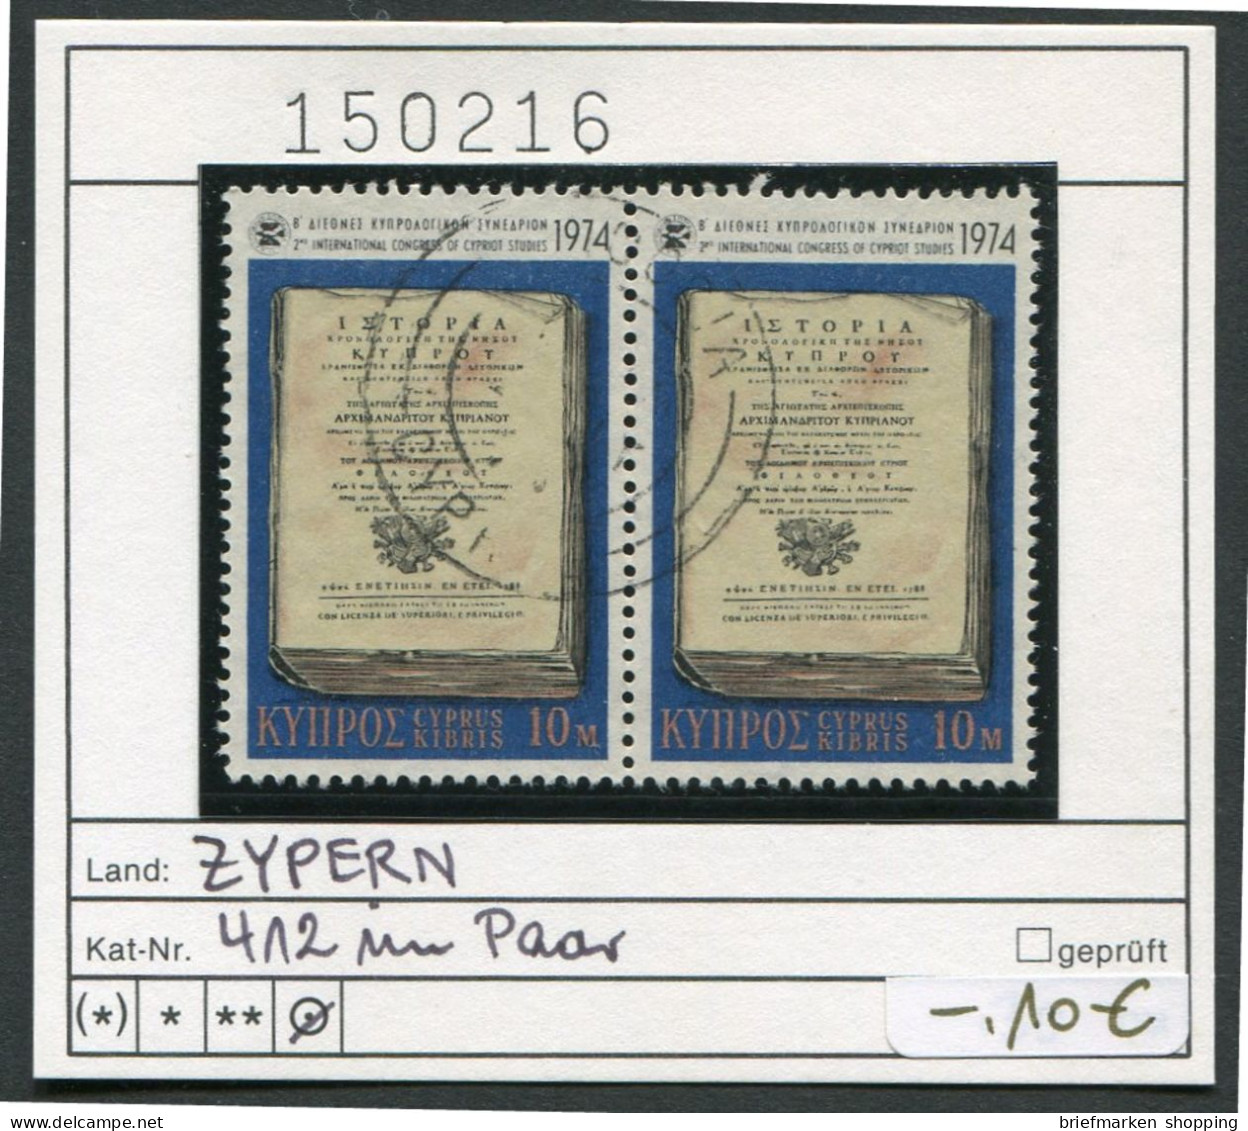 Zypern 1881 - Cyprus 1881 - Chypre 1881 - Michel Ganzsache P7 komplett - ** mnh neuf -